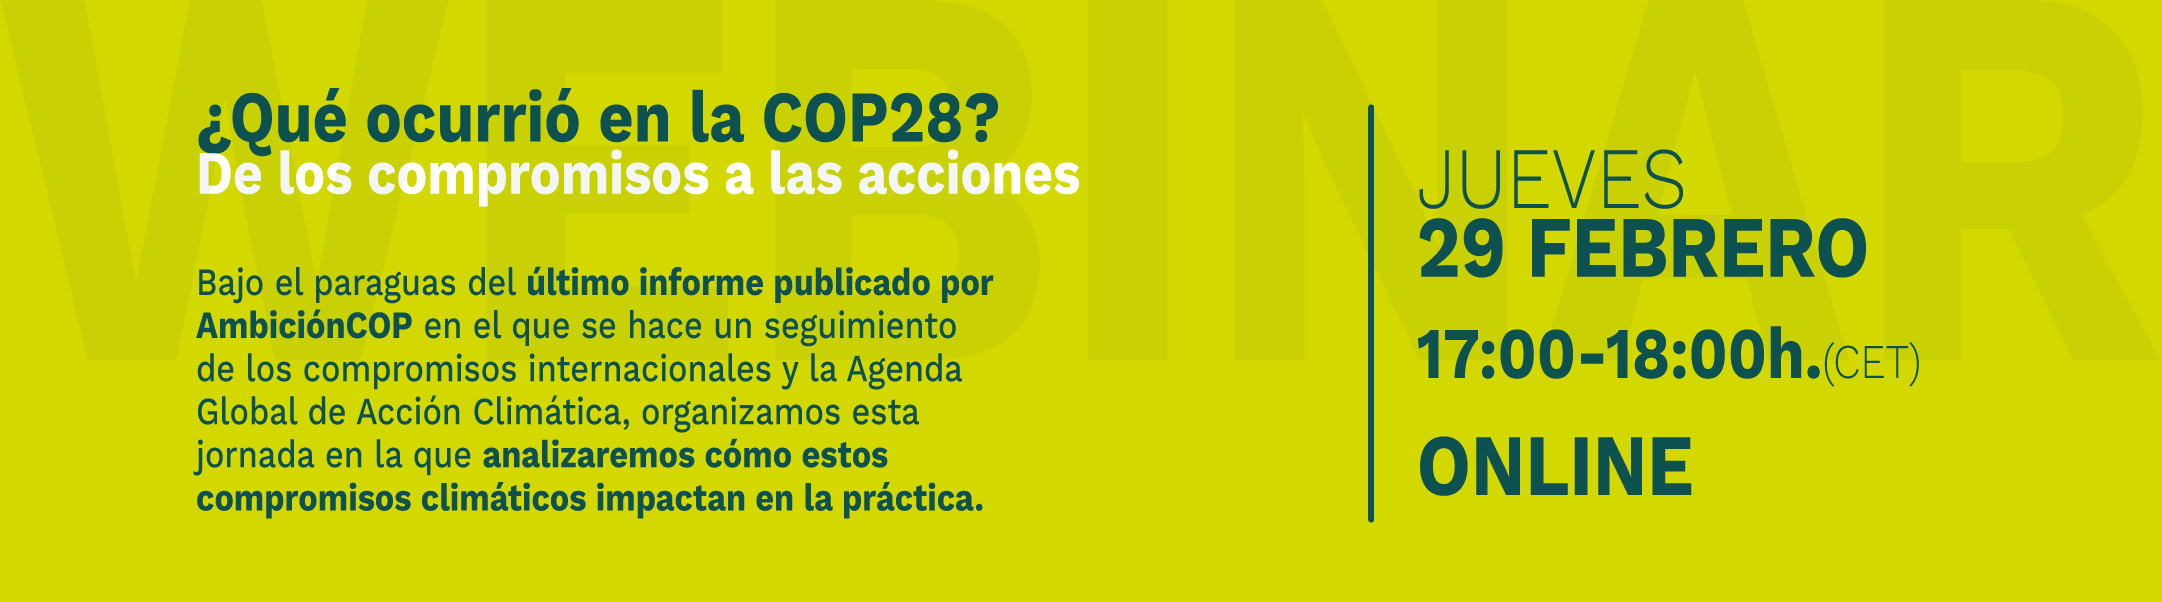 AmbicionCOP COP28 web